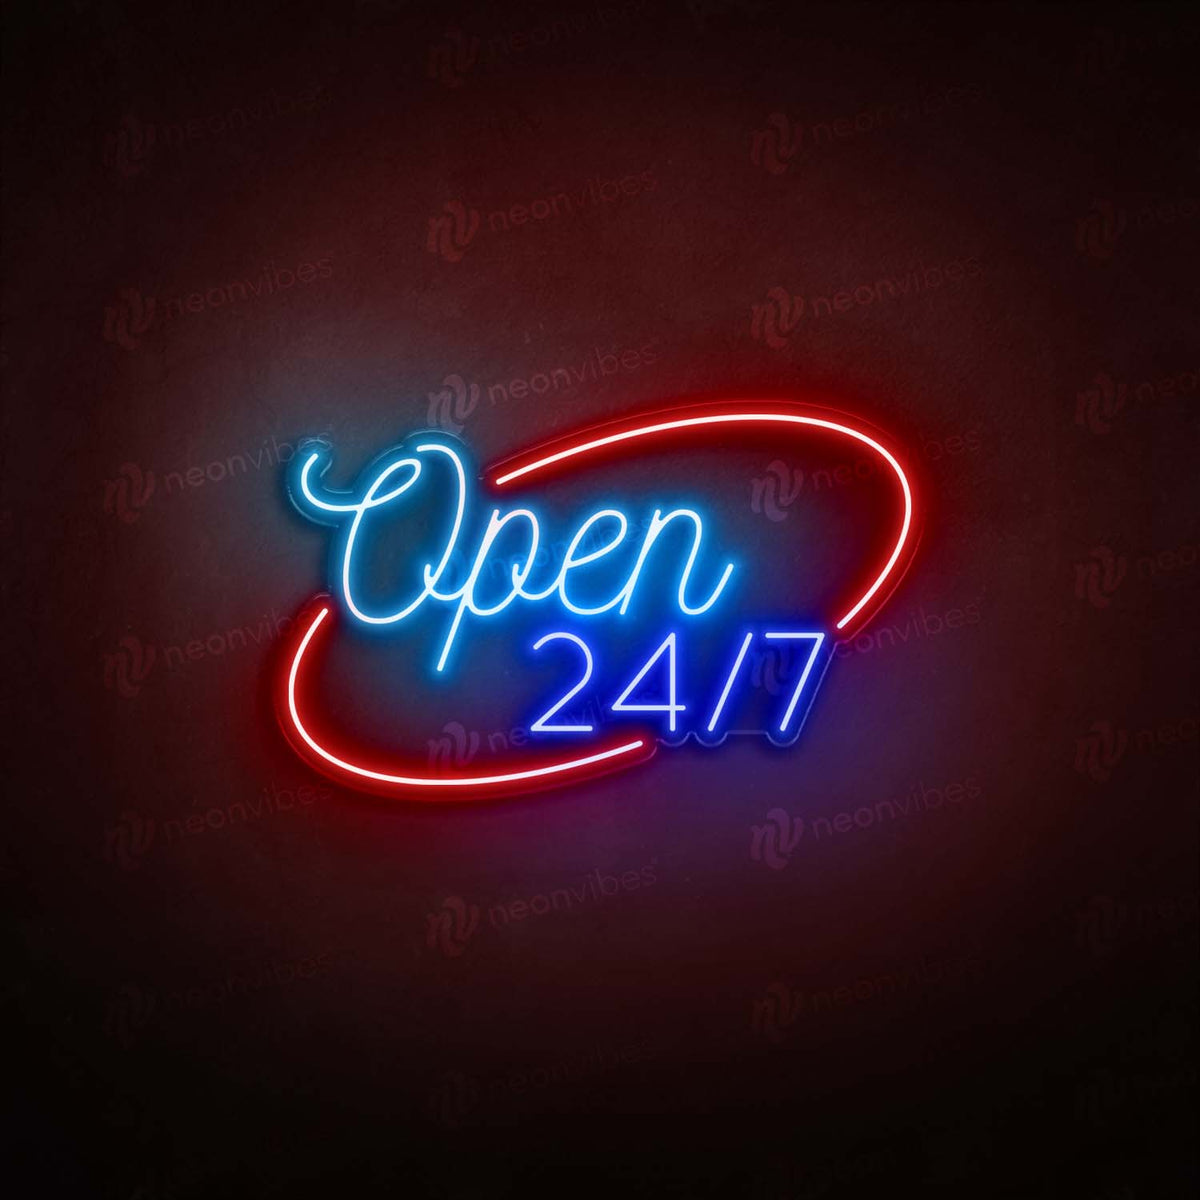 Open 24/7 neon sign